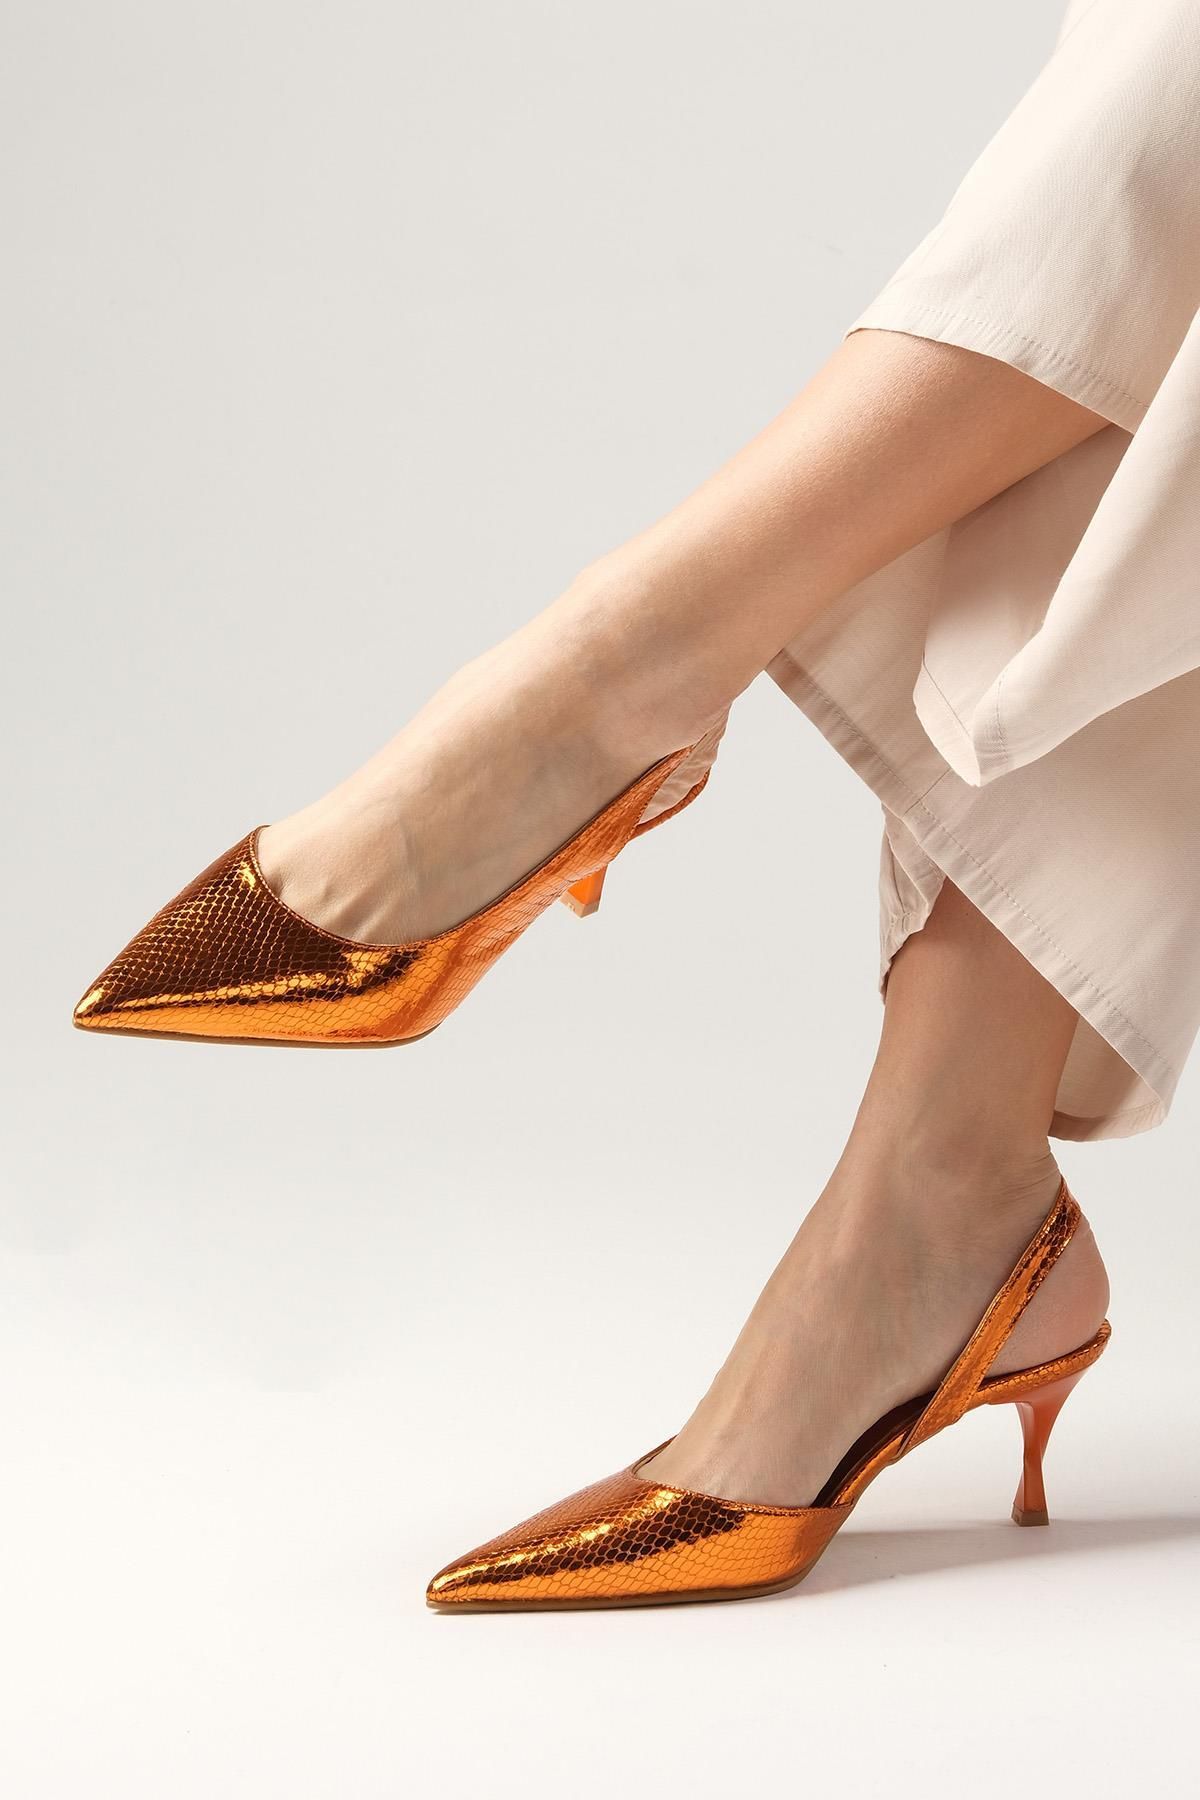 Mio Gusto Clarice Turuncu Renk Yılan Derisi Desenli Kadın Topuklu Ayakkabı